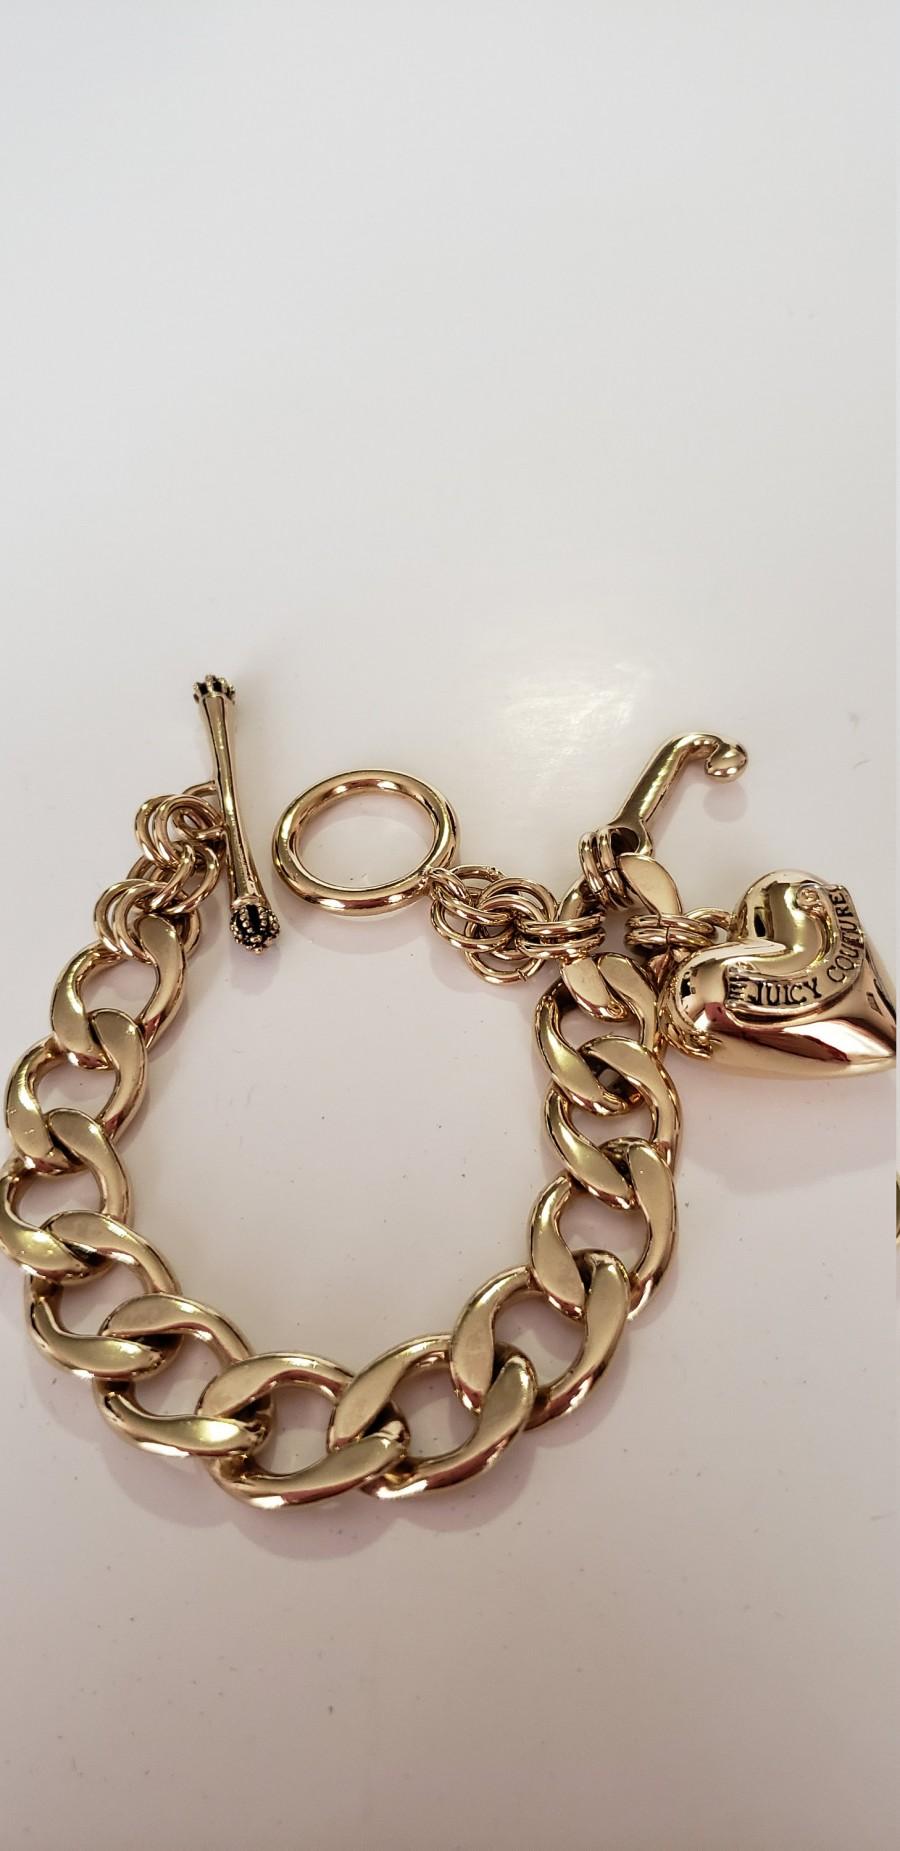 Wedding - Juicy Couture Bracelet.Charm Bracelet.Gold Ton Bracelet.Vintage Charm Bracelet.JC Bracelet.